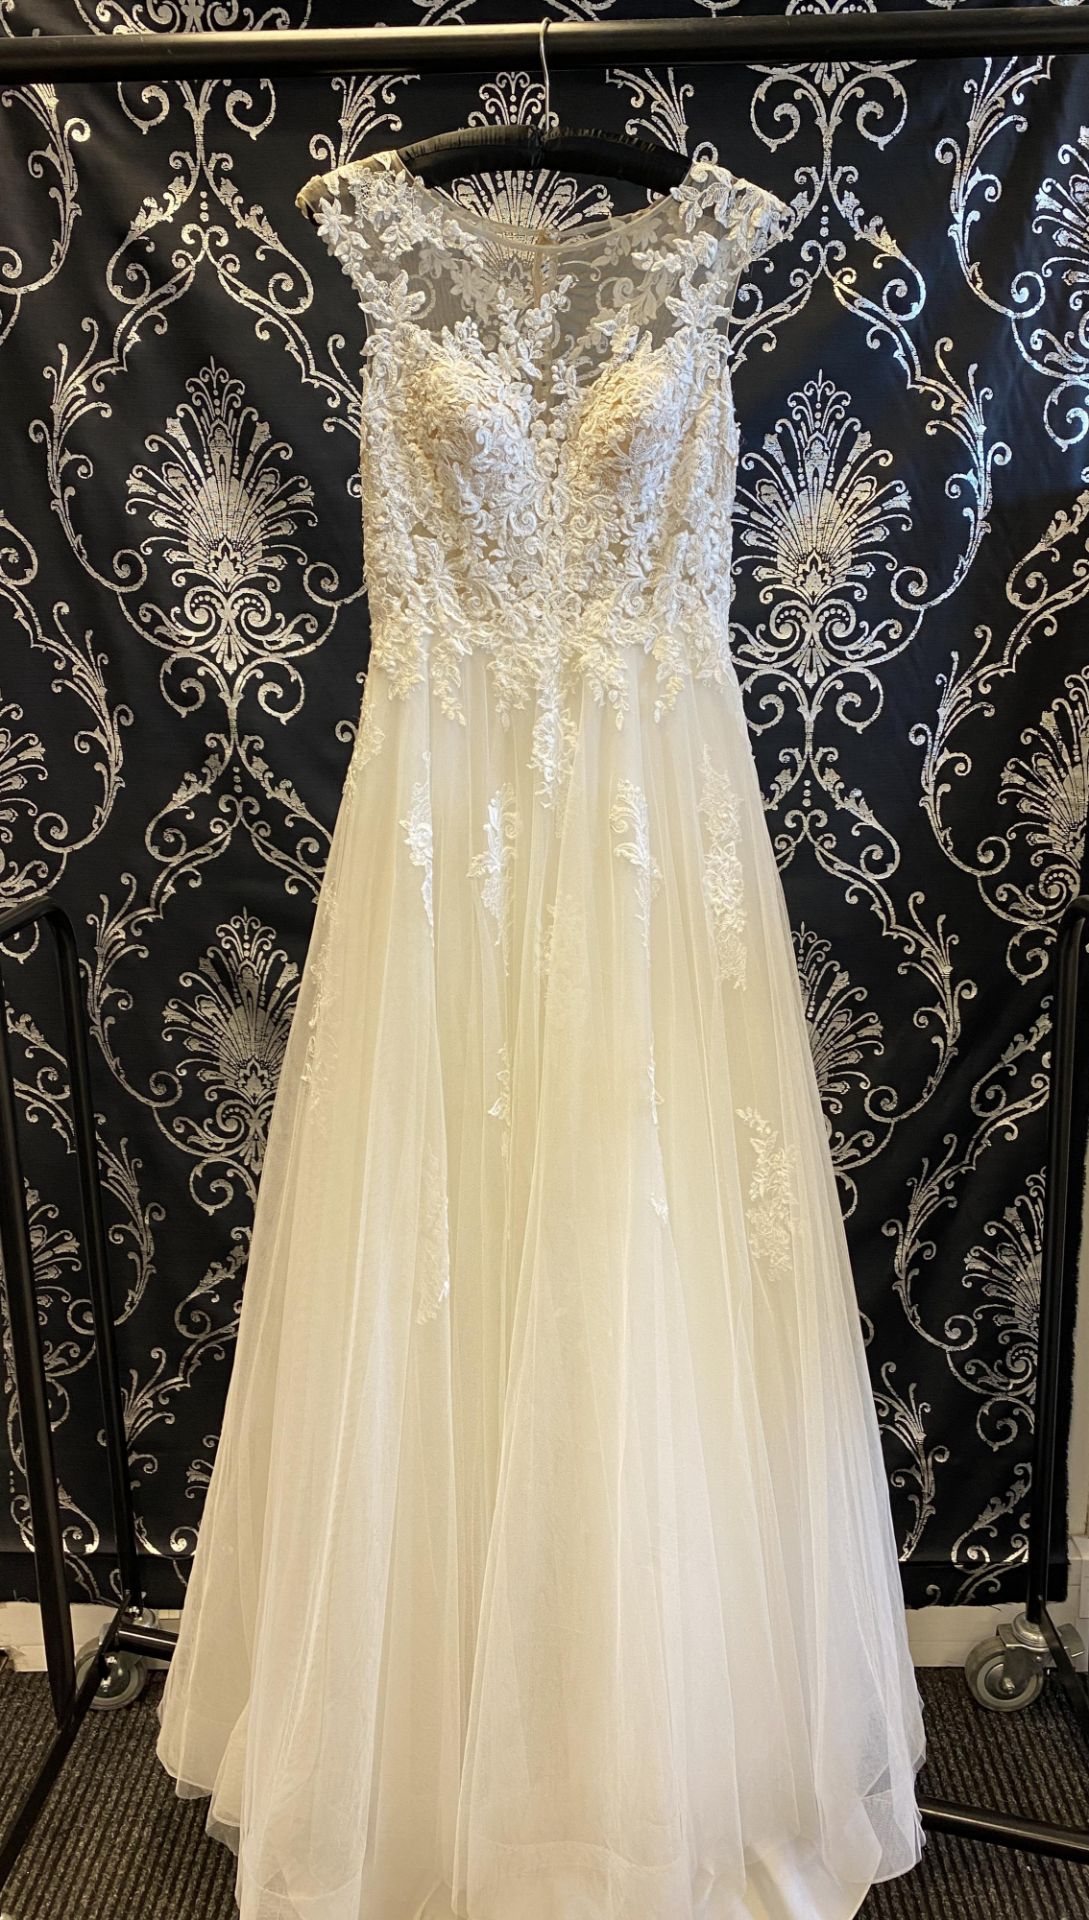 1 x PRONOVIAS Stunning Lace And Chiffon Full Skirted Designer Wedding Dress RRP £1,800 UK12 - Image 4 of 7